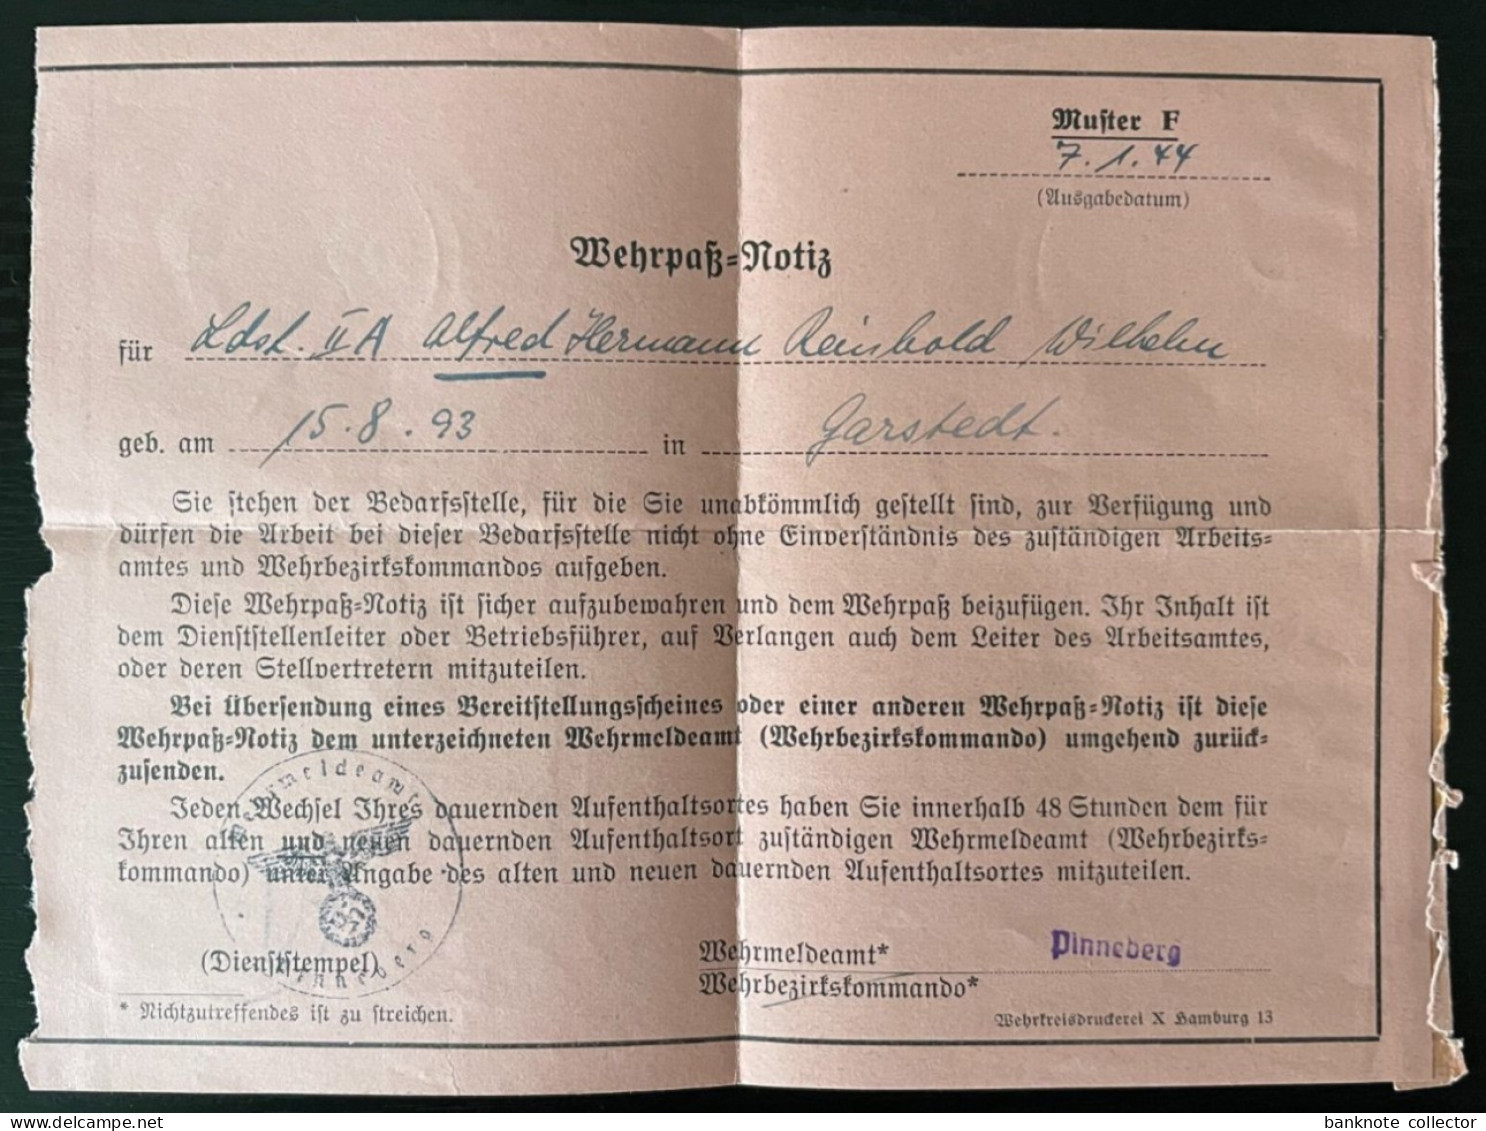 Deutschland, Germany - Deutsches Reich - viele Dokumente von einer Person 1936 - 44 !